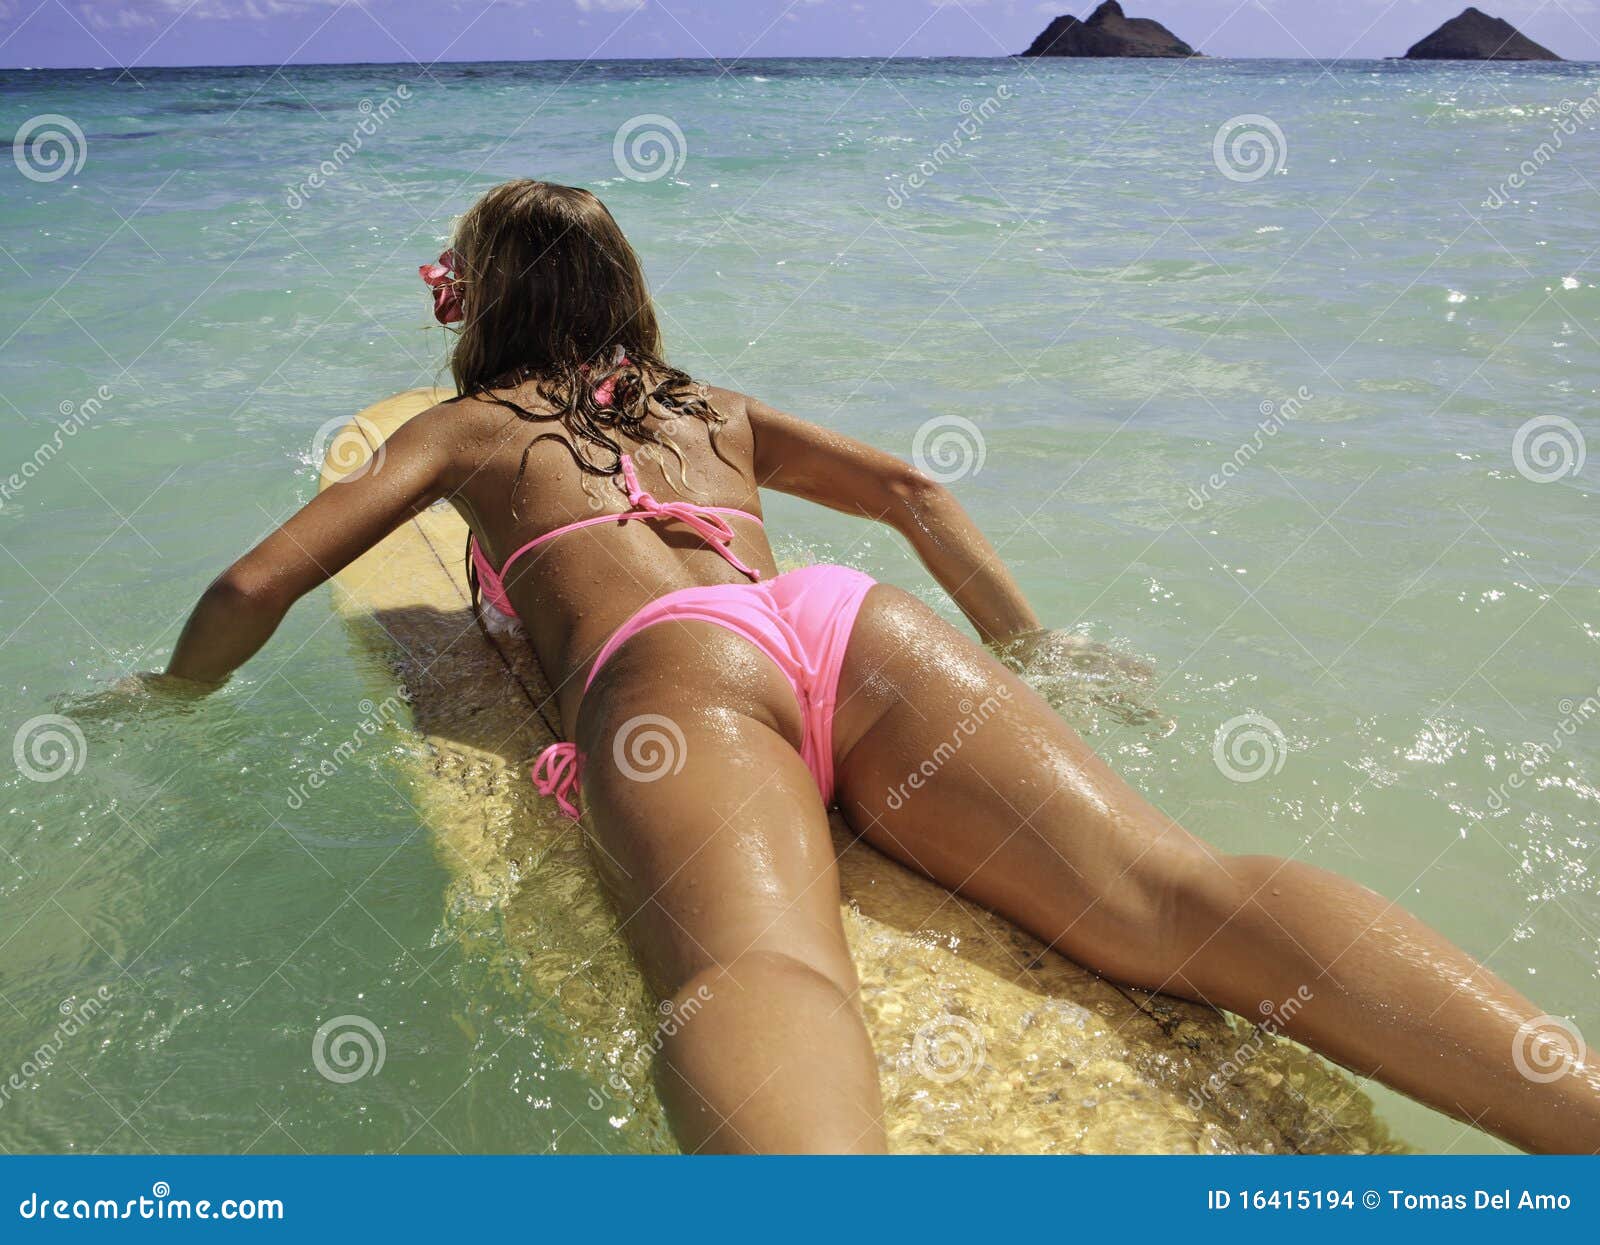 girl in pink bikini at the beach